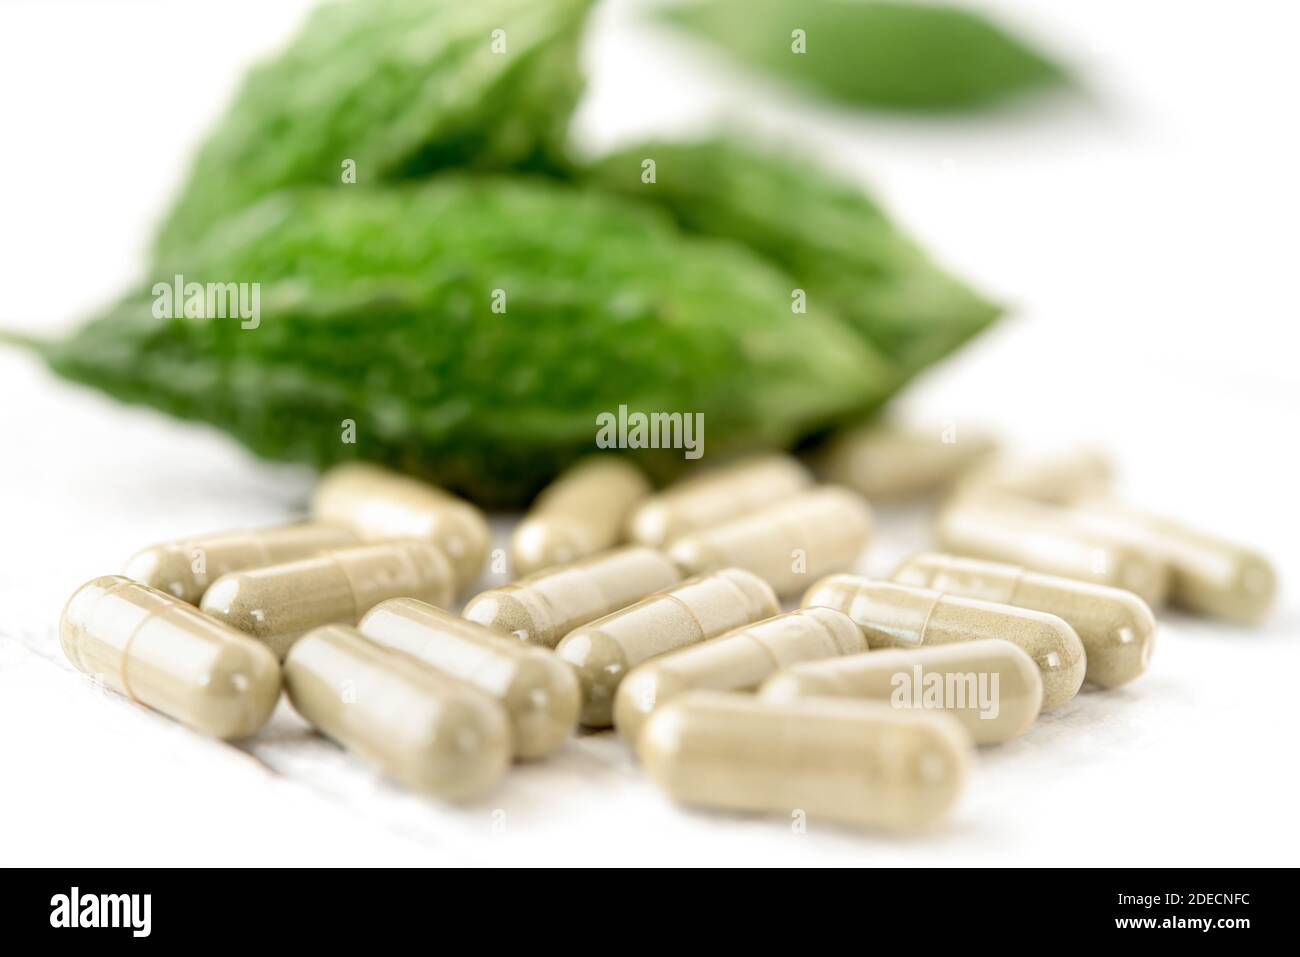 Capsule verdi di estratto di erbe davanti alle zucche amare contro sfondo bianco della tabella per il completamento di dieta e la buona salute Foto Stock